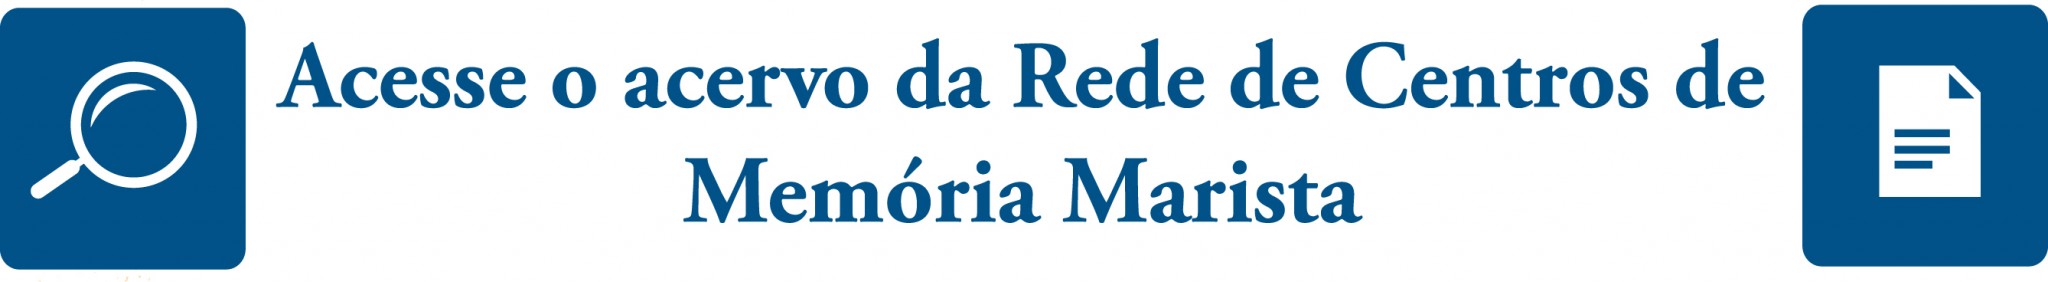 Rede de centros de Memórias Marista - União Marista do Brasil